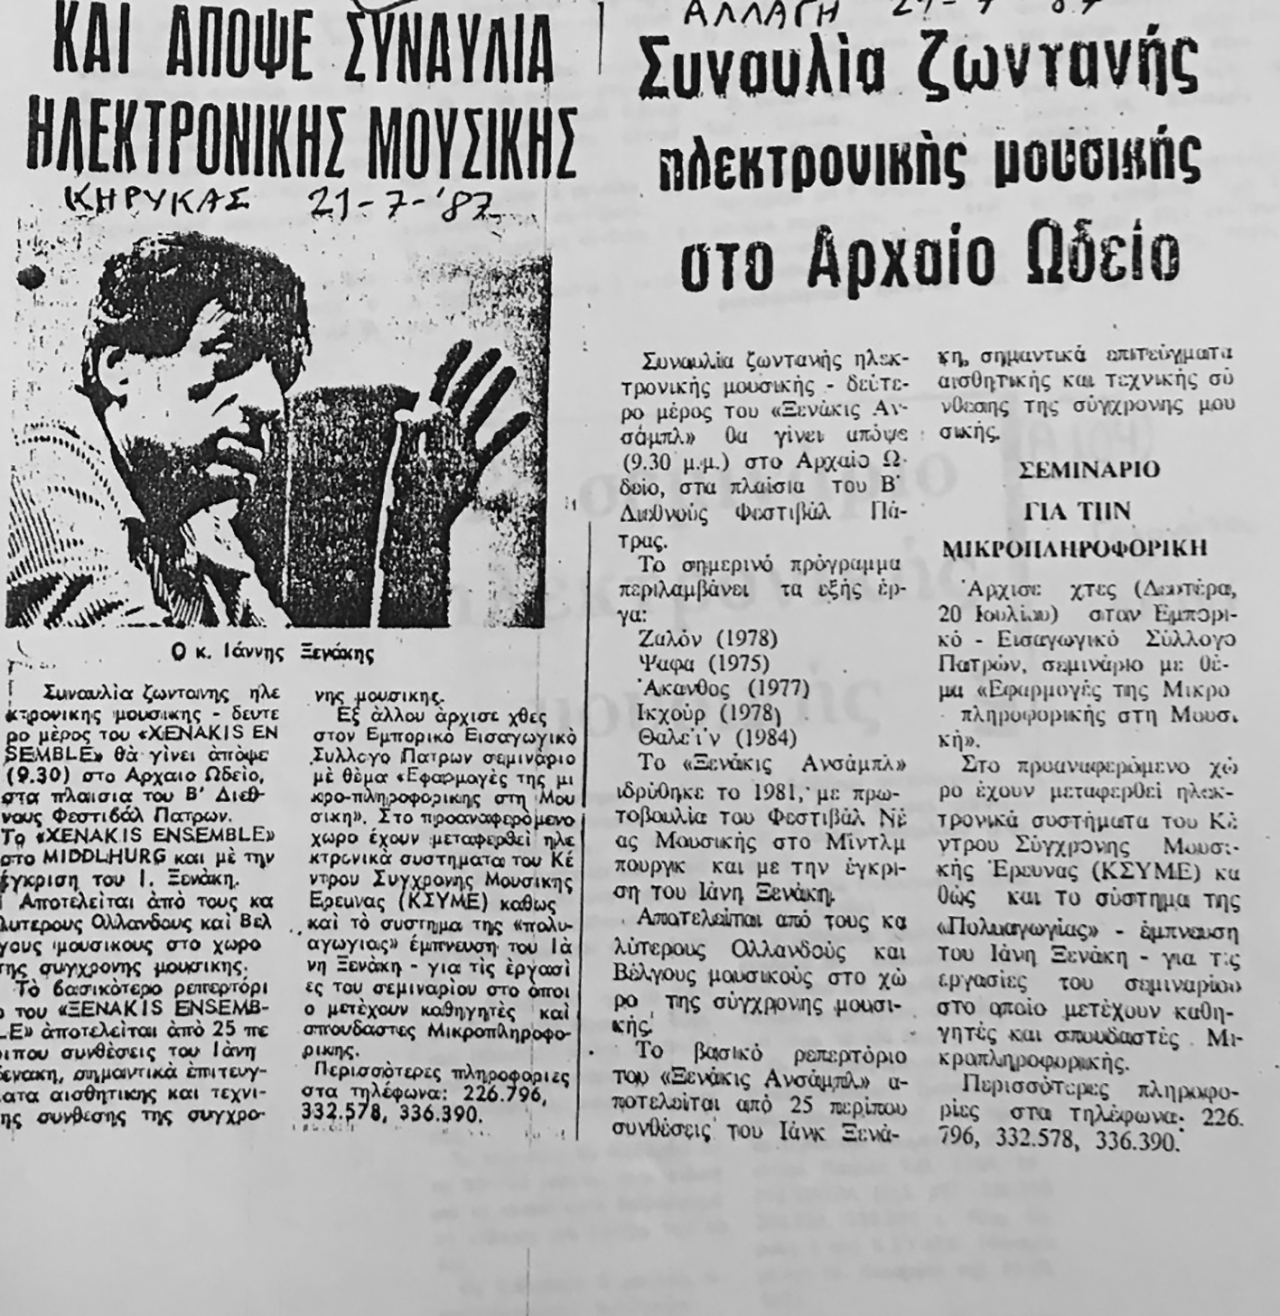 Nachrichtenclip über die Anwesenheit von IX beim Internationalen Festival in Patra, das Xenakis-Ensemble und die Aktivitäten von KSYME während des Festivals, Juli 1987